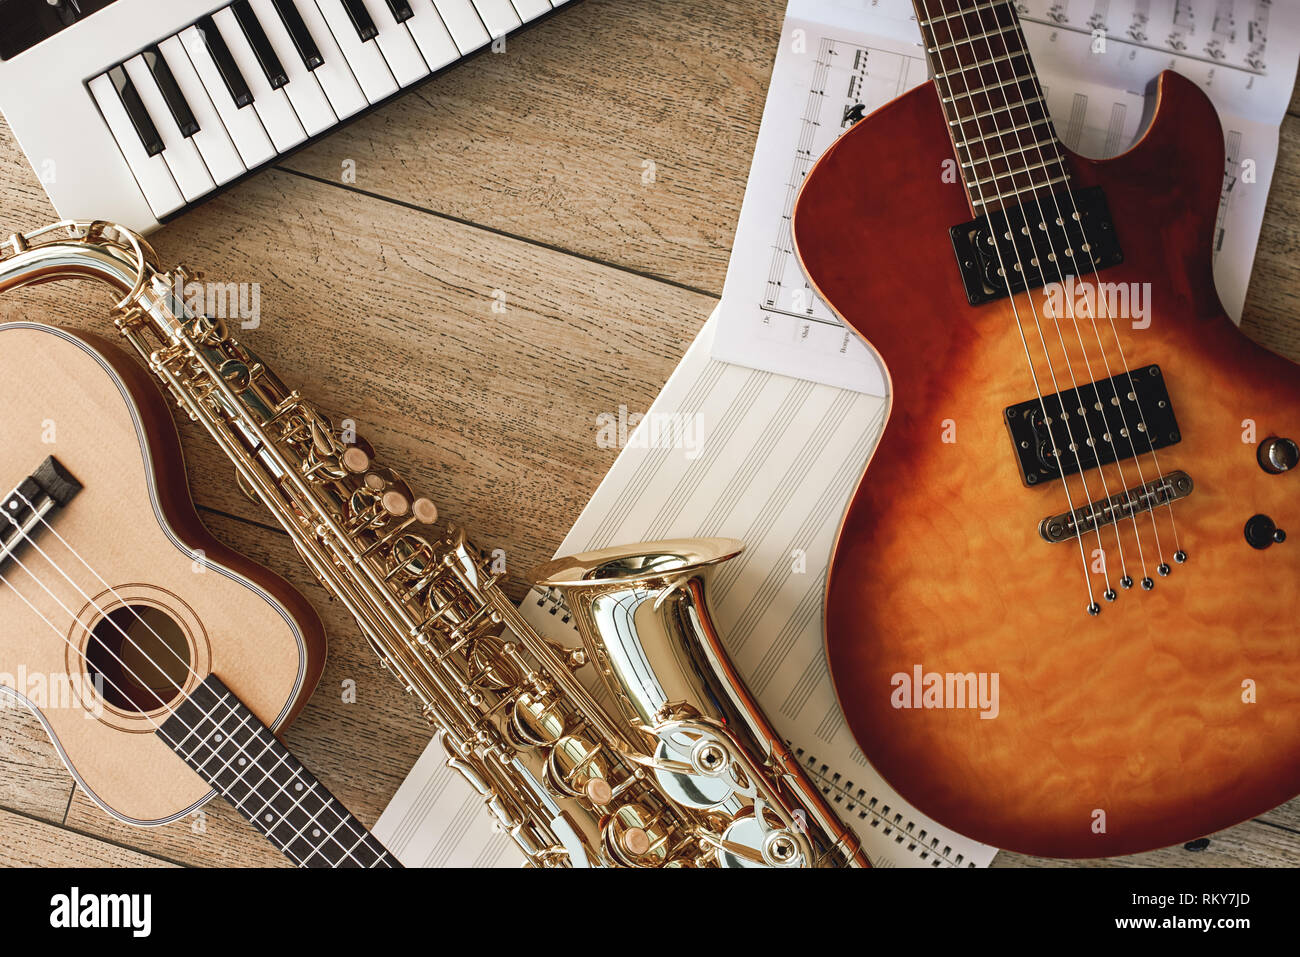 Zusammensetzung der verschiedenen Musikinstrumente: Synthesizer, E-Gitarre,  Saxophon und Ukulele liegen, Blätter mit Noten liegen auf Holzboden und.  Musikinstrumente. Musik Equipment Stockfotografie - Alamy